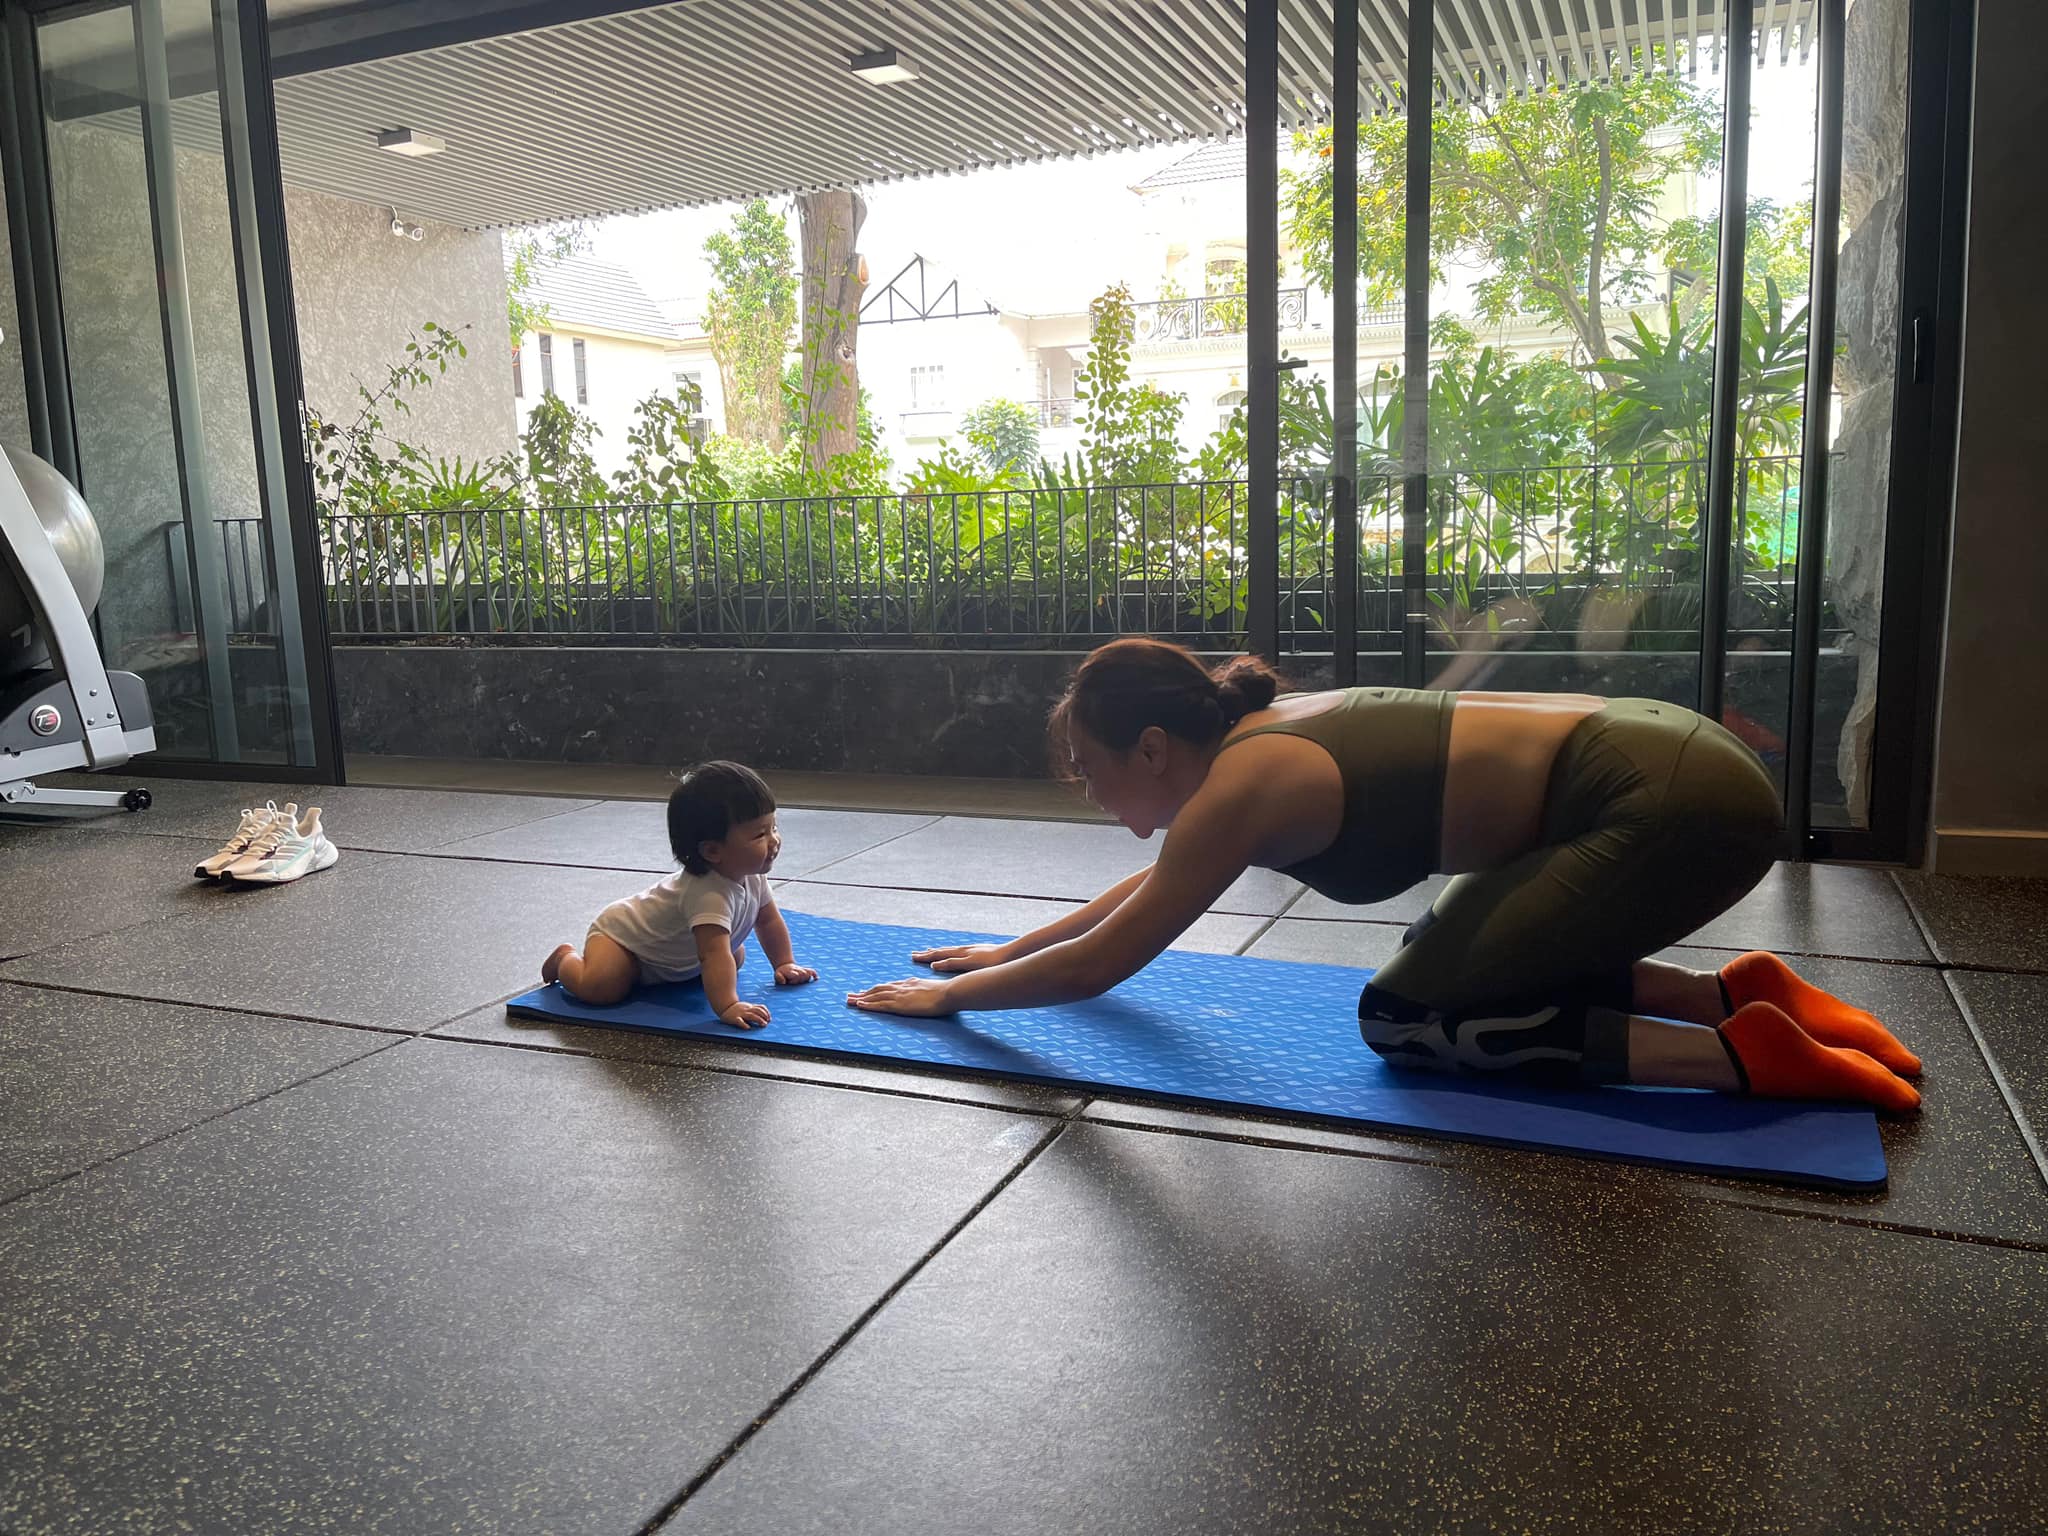 Con gái Đàm Thu Trang mới có từng tuổi đã biết tập yoga cùng mẹ, Cường Đô La tiết lộ vai trò phía sau? - ảnh 2